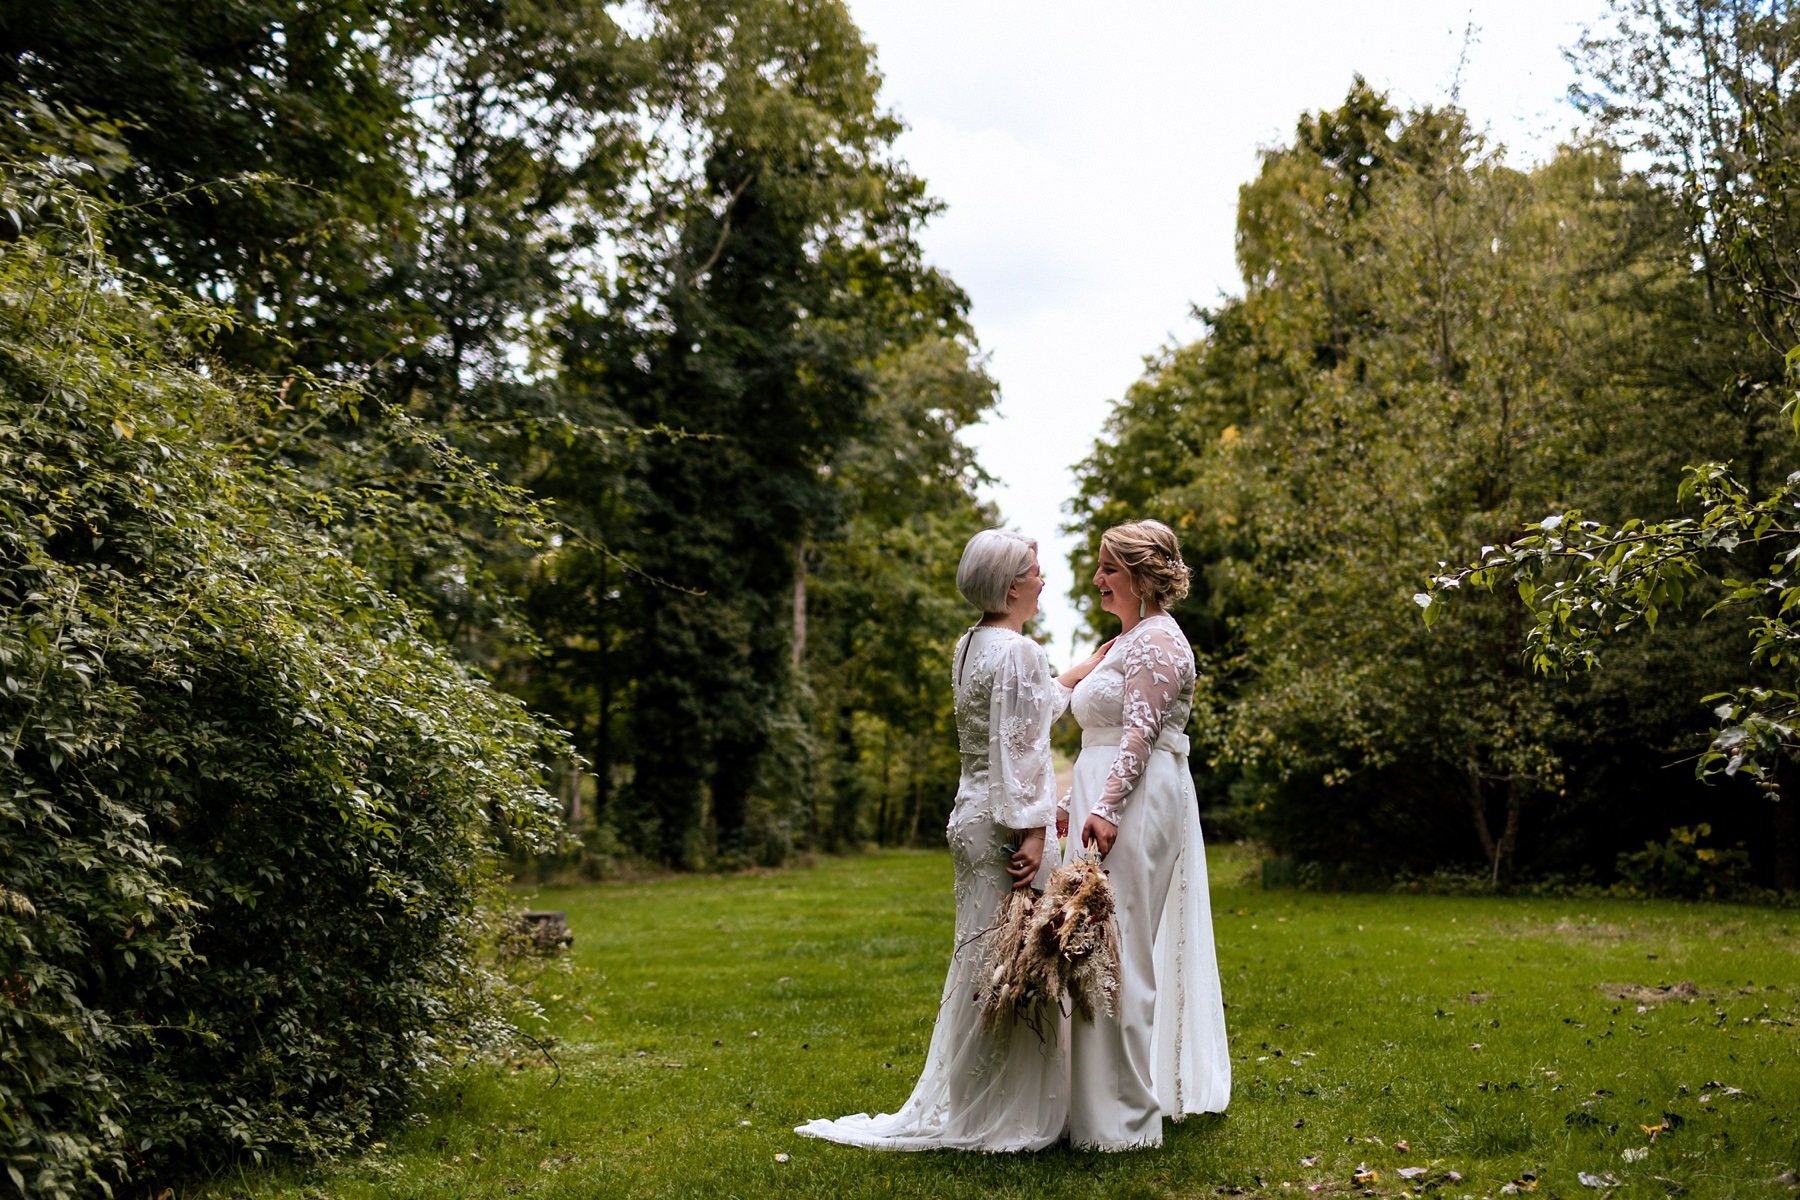 evenley-wood-garden-wedding-in-the-woods_0032.jpg